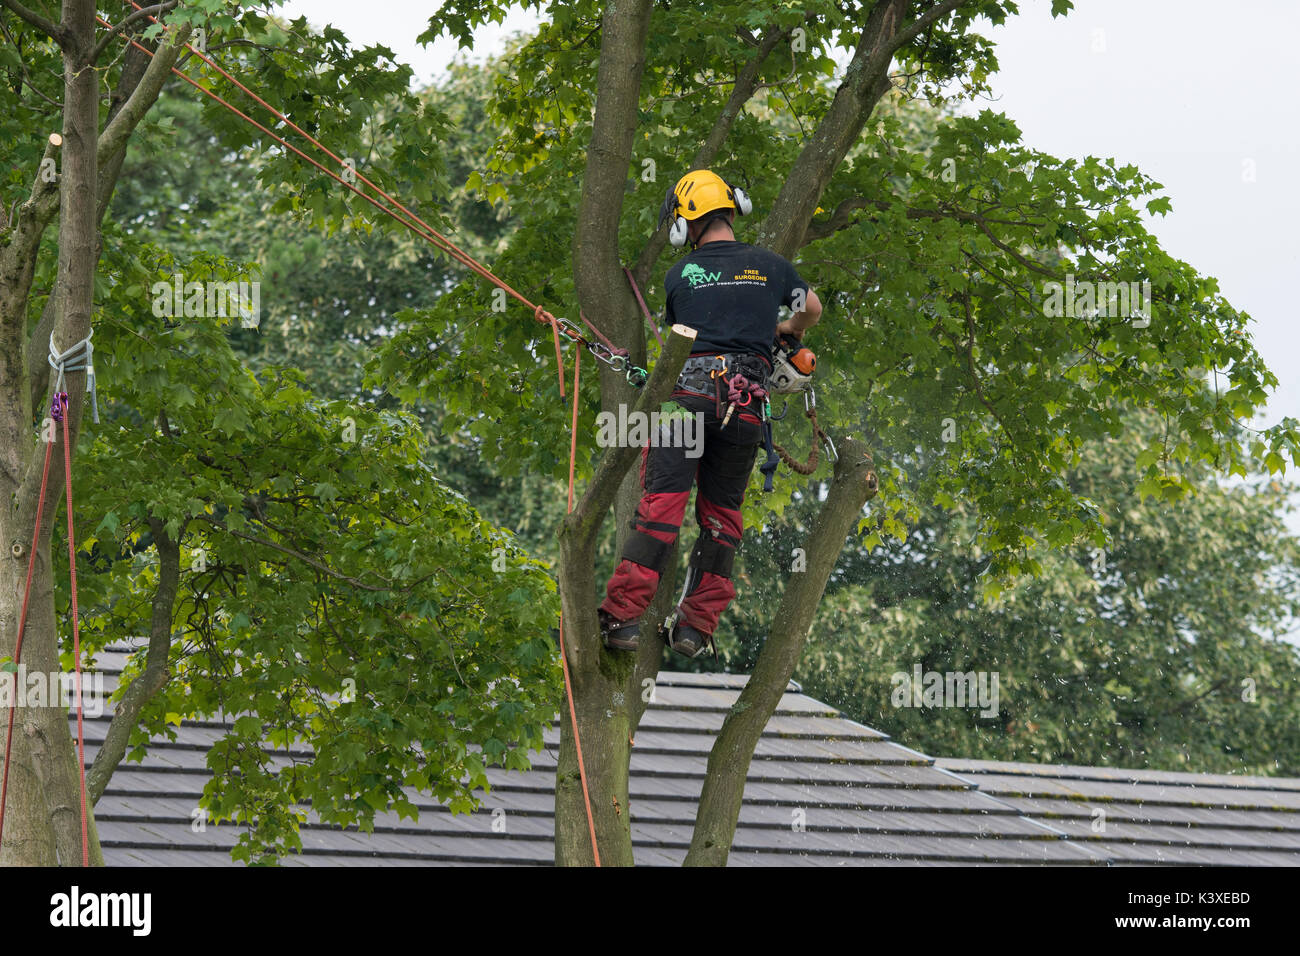 Baum Chirurg in Schutzausrüstung arbeiten, mit Kletterseilen für Safety & holding Kettensäge, hoch in den Filialen der Garten baum - Yorkshire, England, UK. Stockfoto